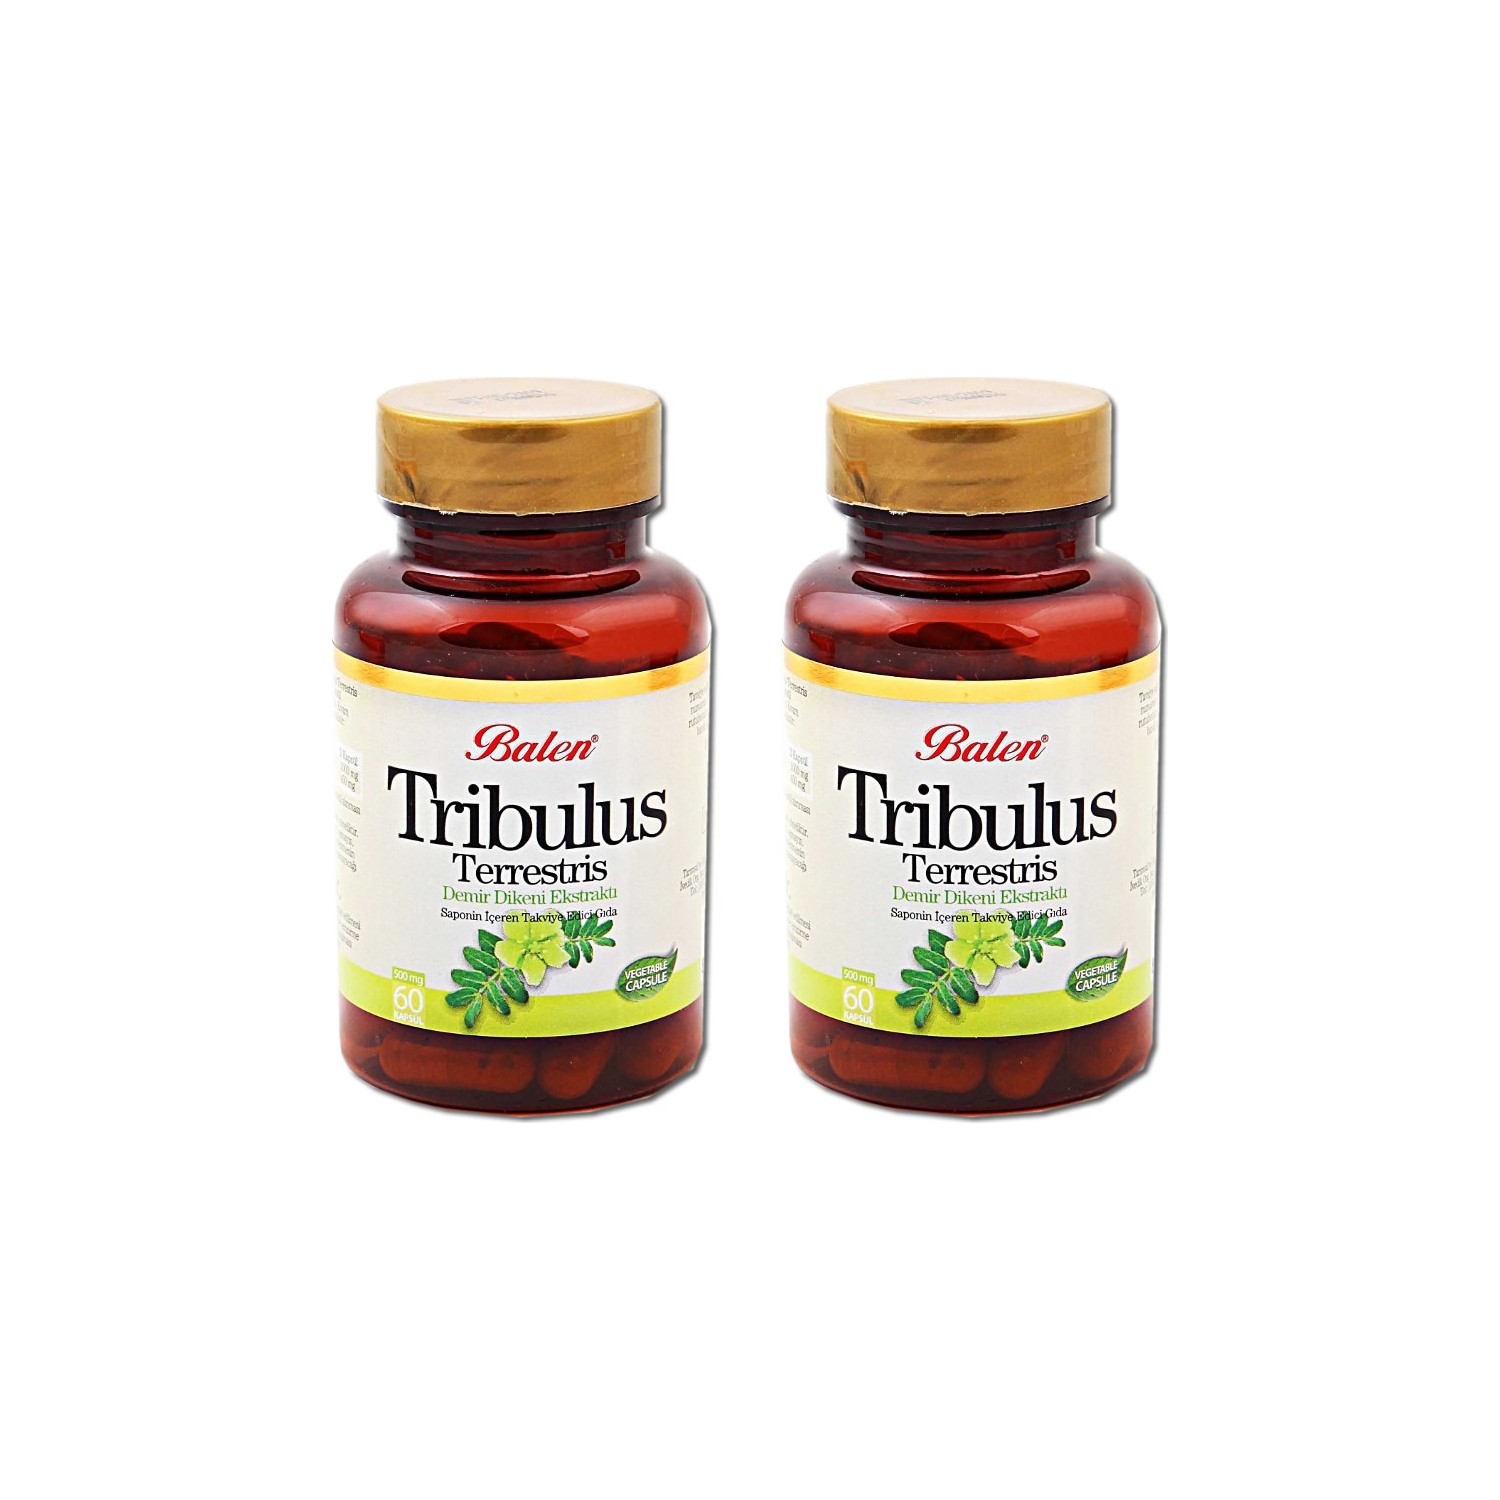 Пищевая добавка Balen Tribulus Terrestris 500 мг, 2 упаковки по 60 капсул optimum system beta alanine 600 mg 60 caps